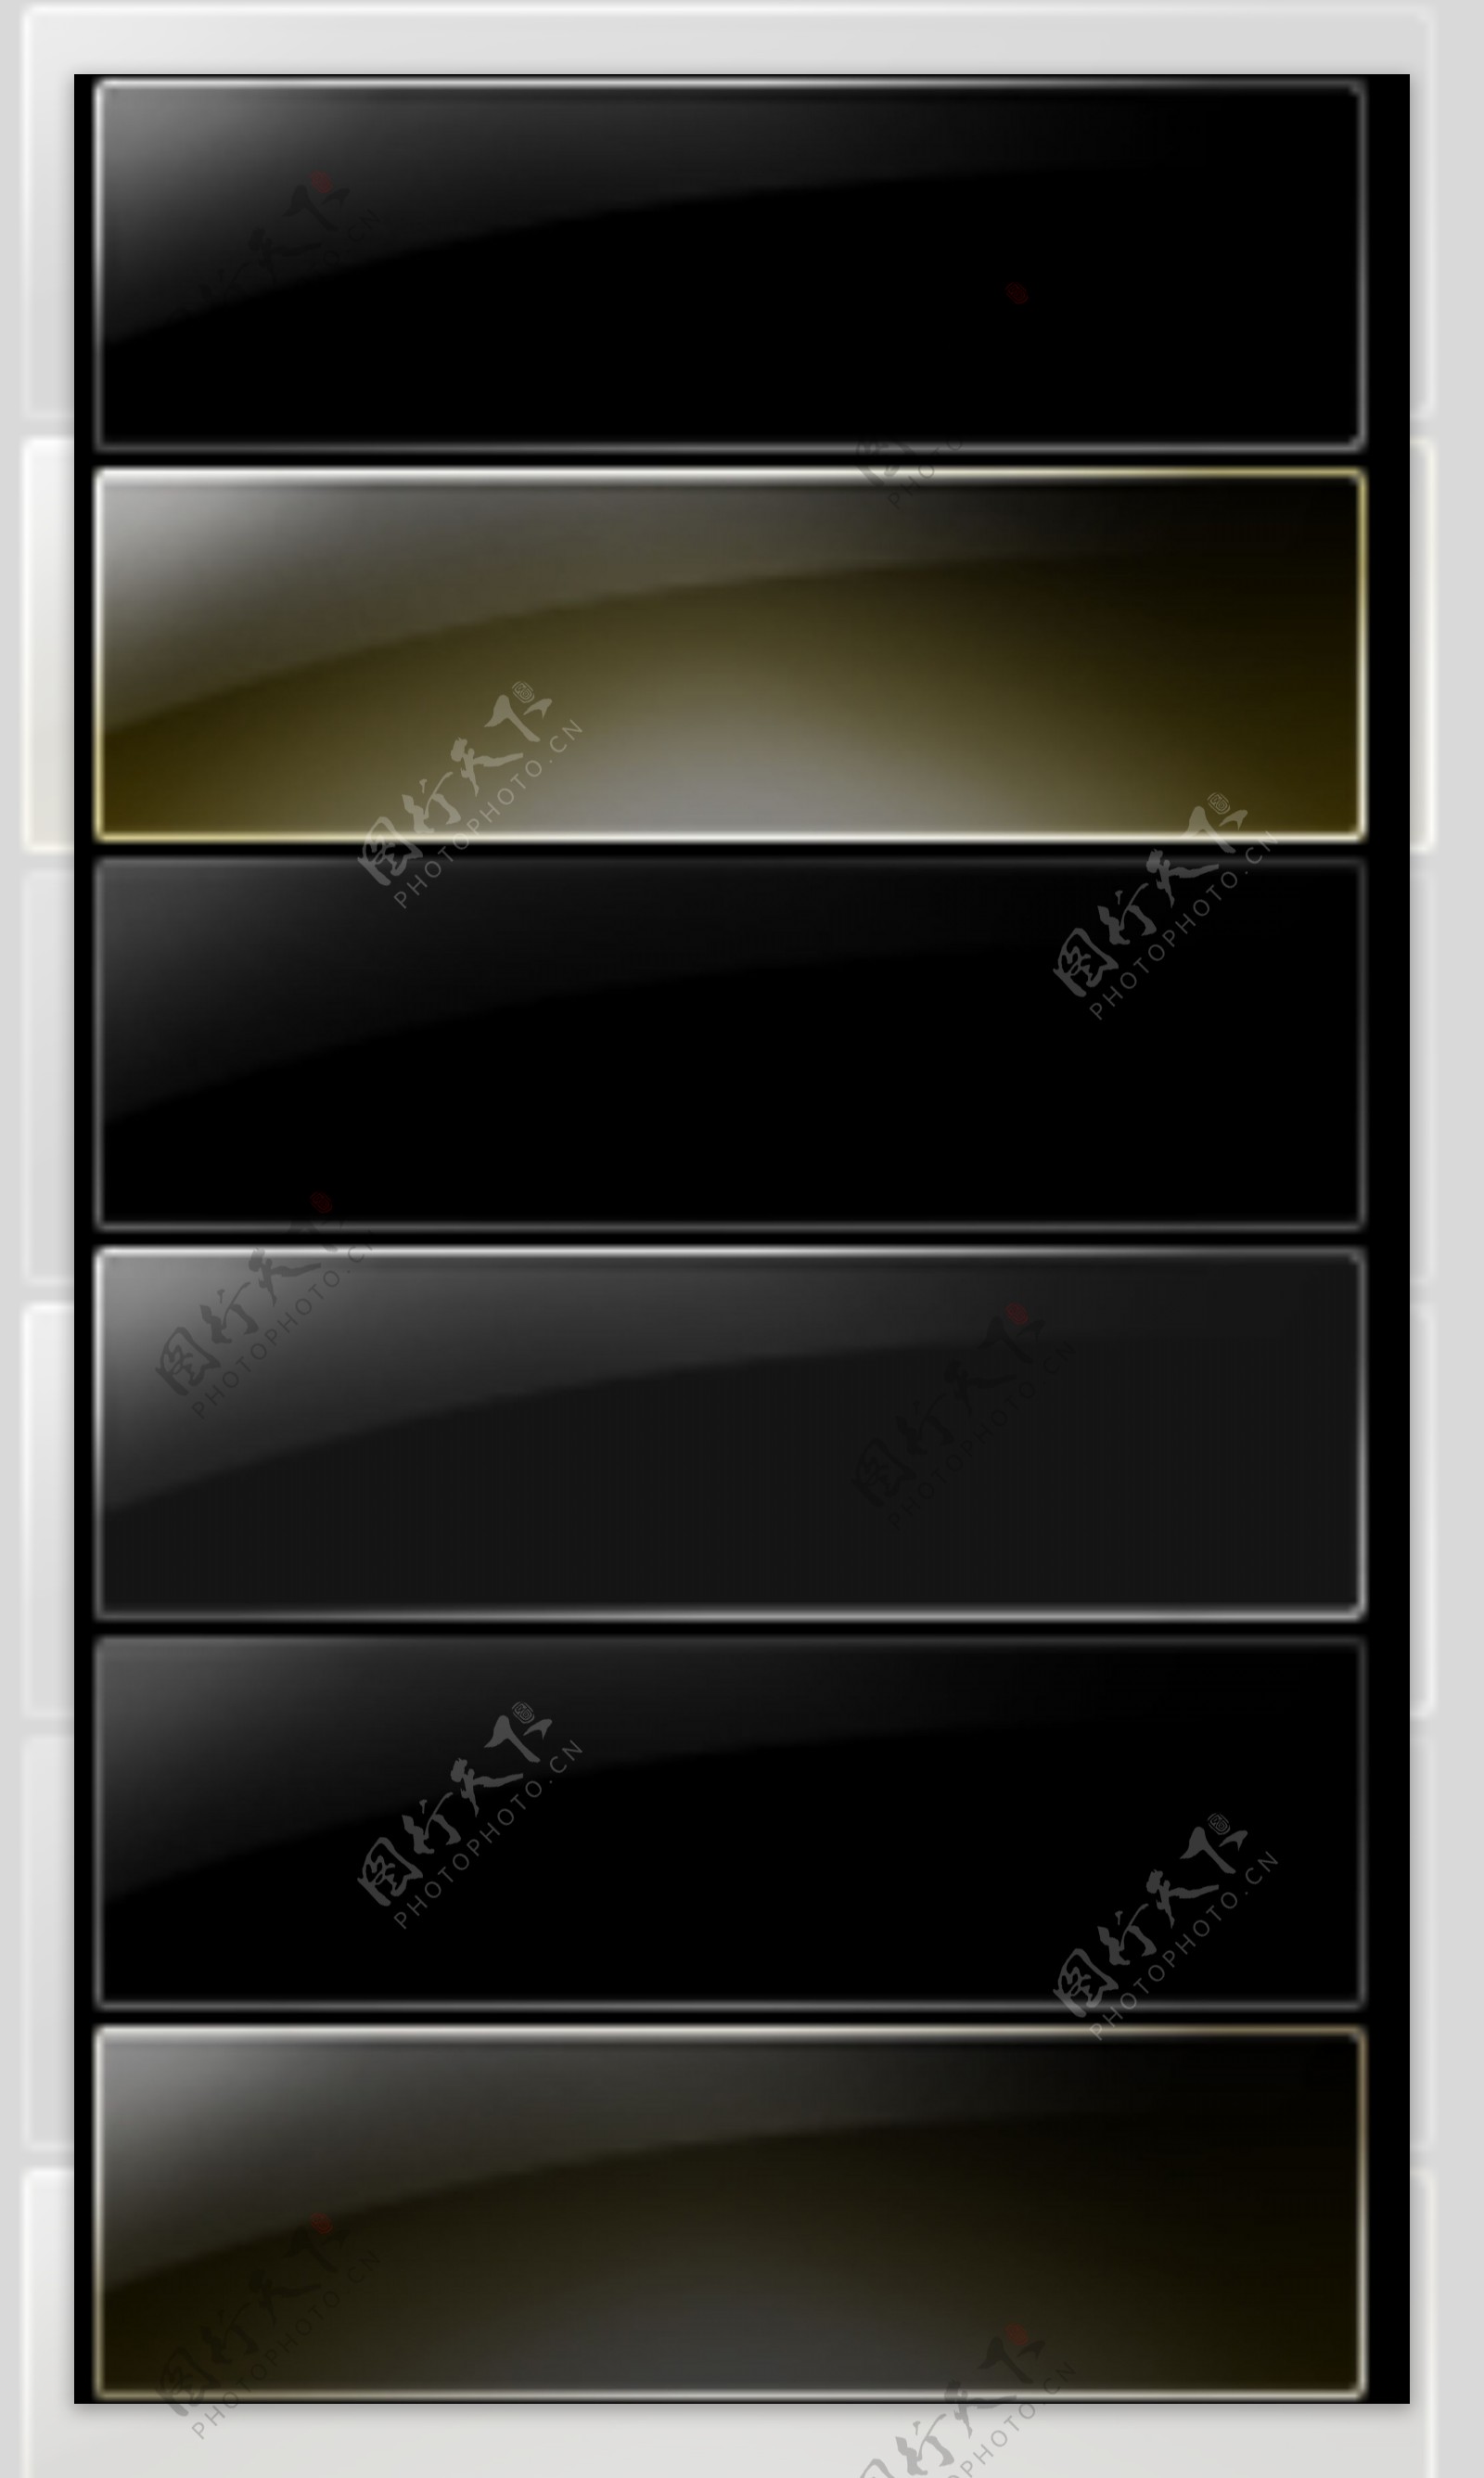 WIN7风格黑色炫酷按钮模板素材